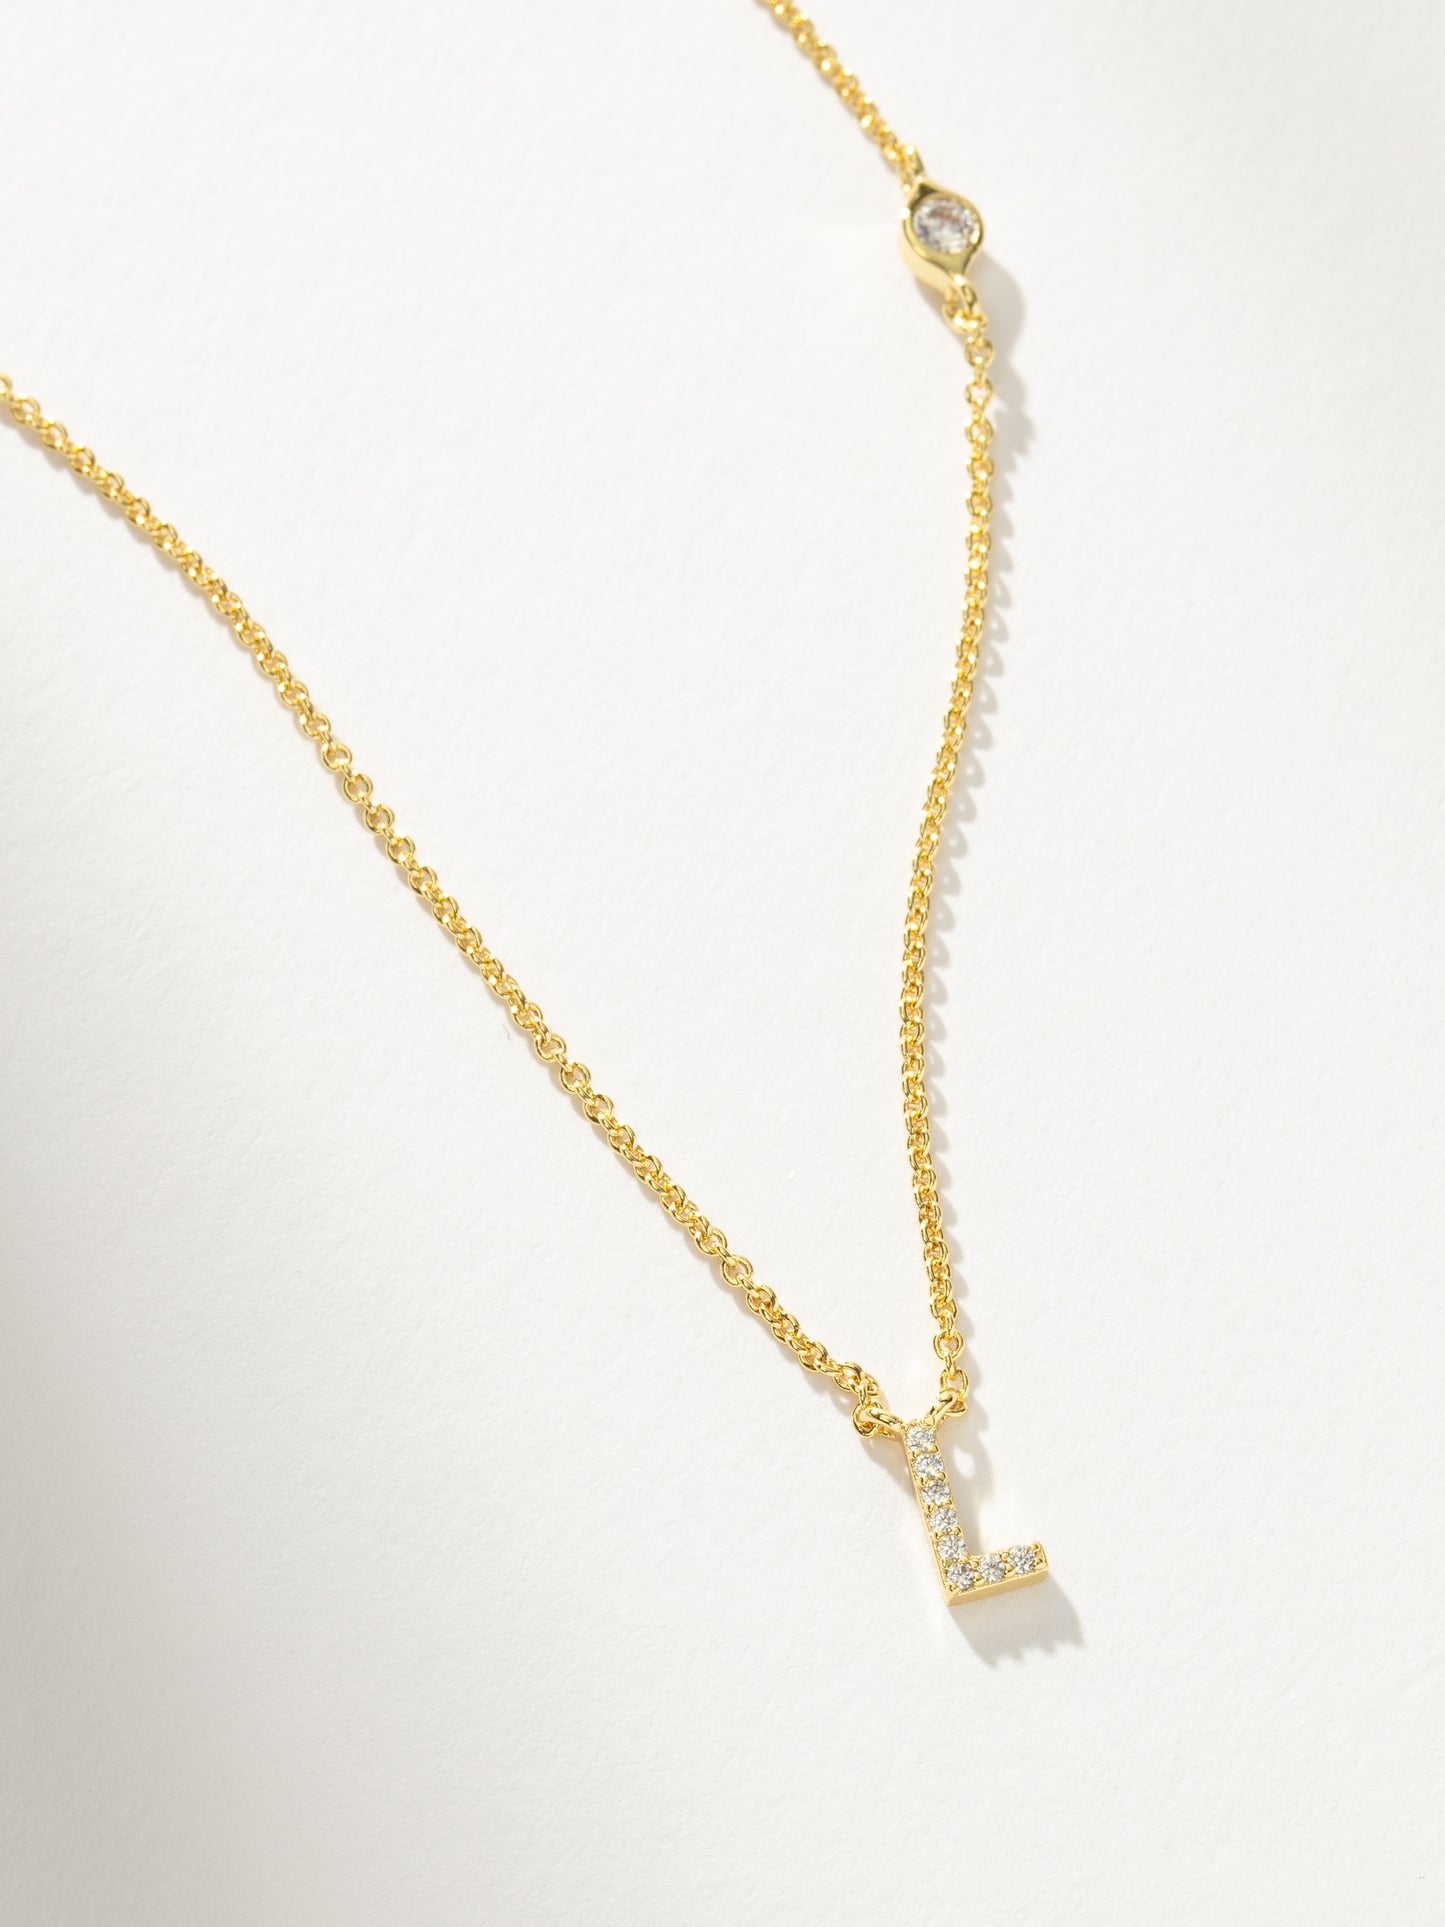 Pavé Initial Necklace | Gold L | Product Detail Image | Uncommon James